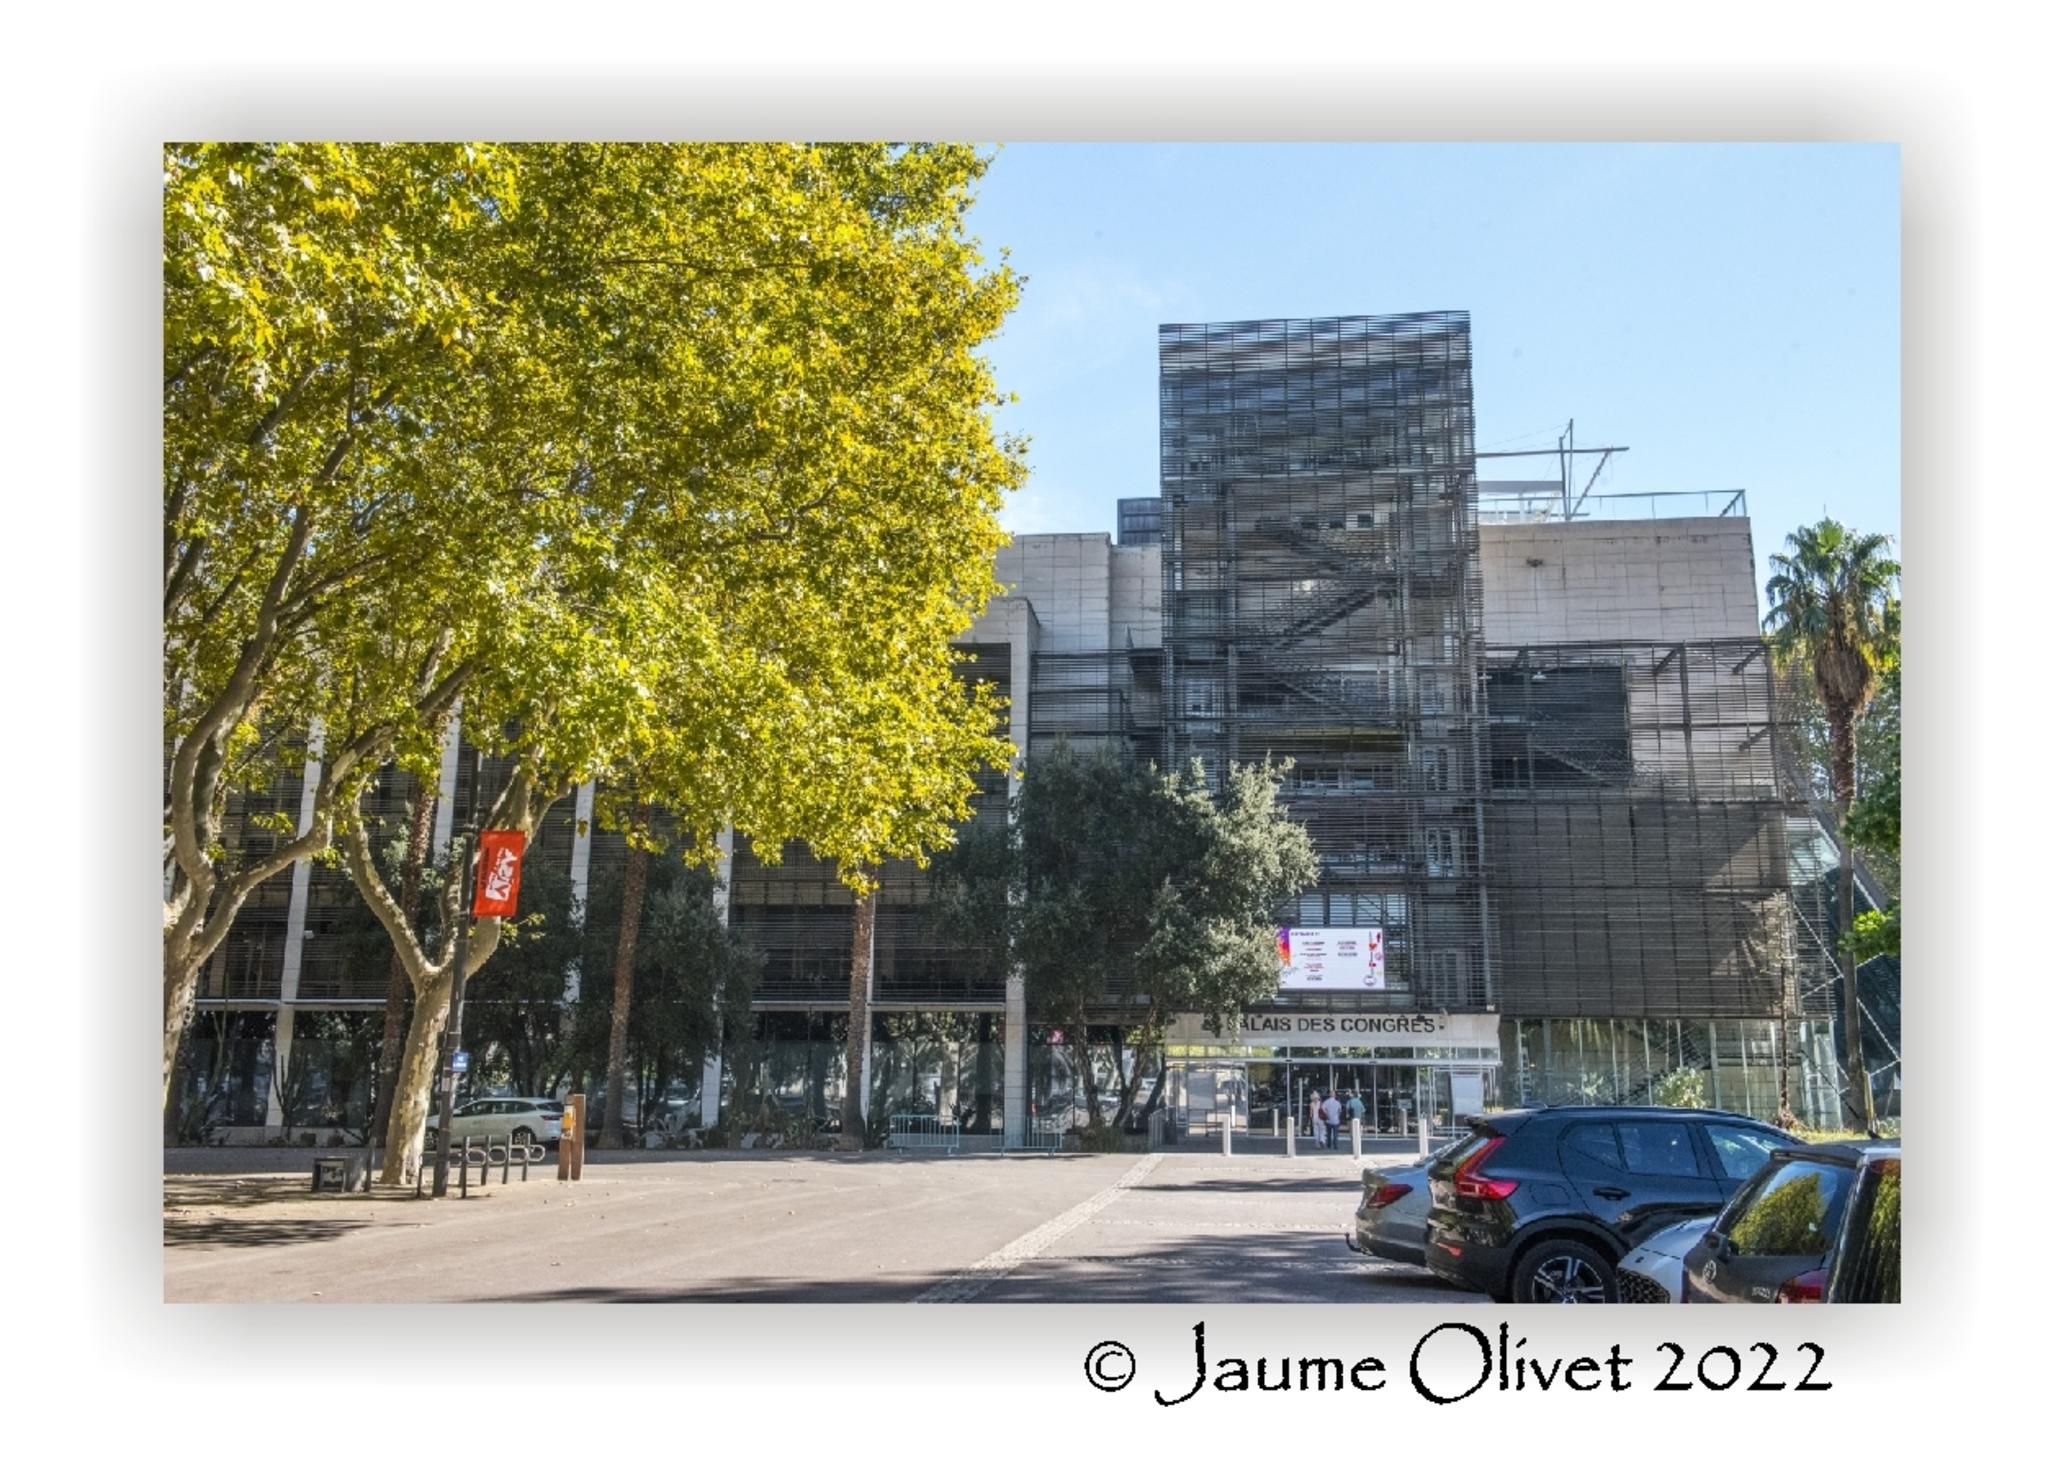  Jaume Olivet 2022